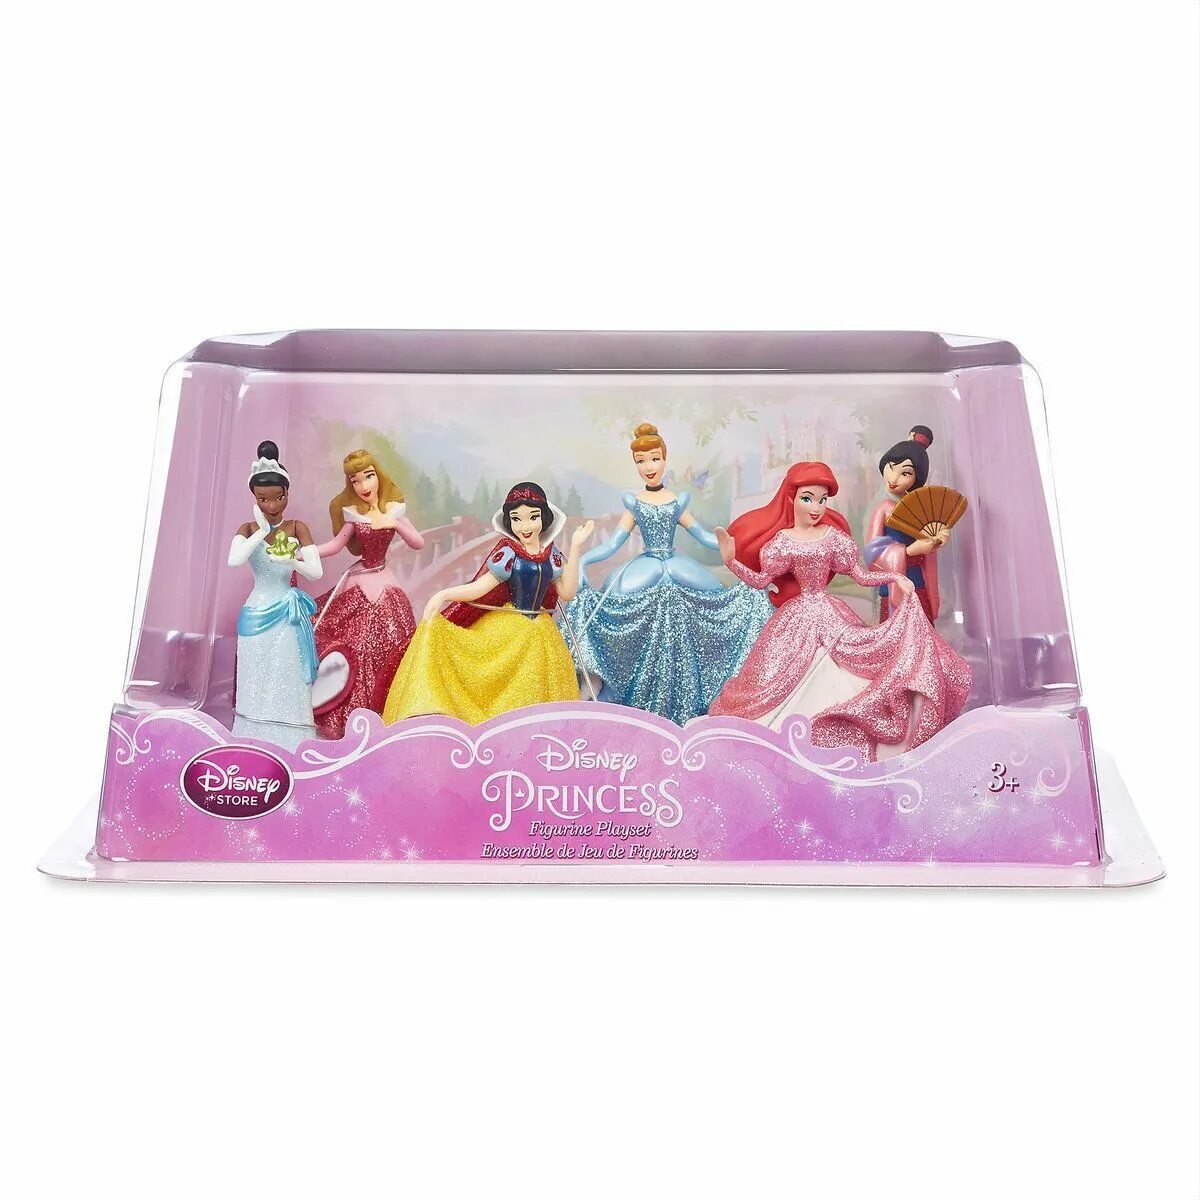 Набор принцессы Дисней. Фигурки Дисней набор принцесс аниатор 20 стор. Игровой набор Disney "принцессы. Мини принцессы Дисней стор.